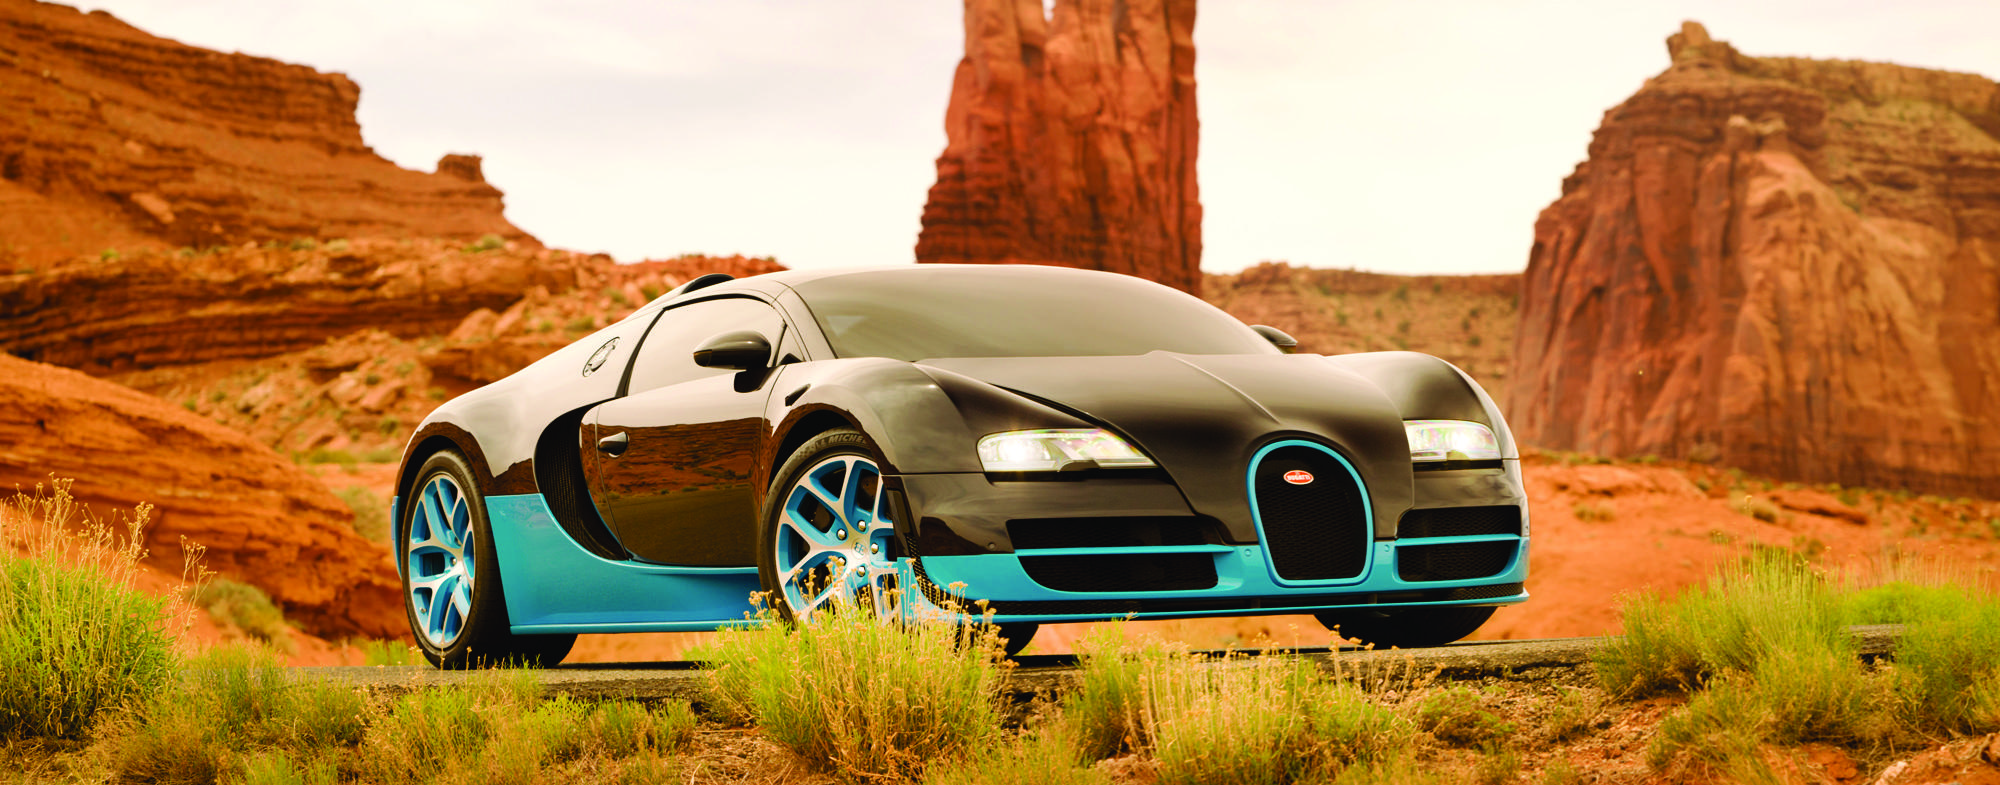 Transformers 4 Bugatti